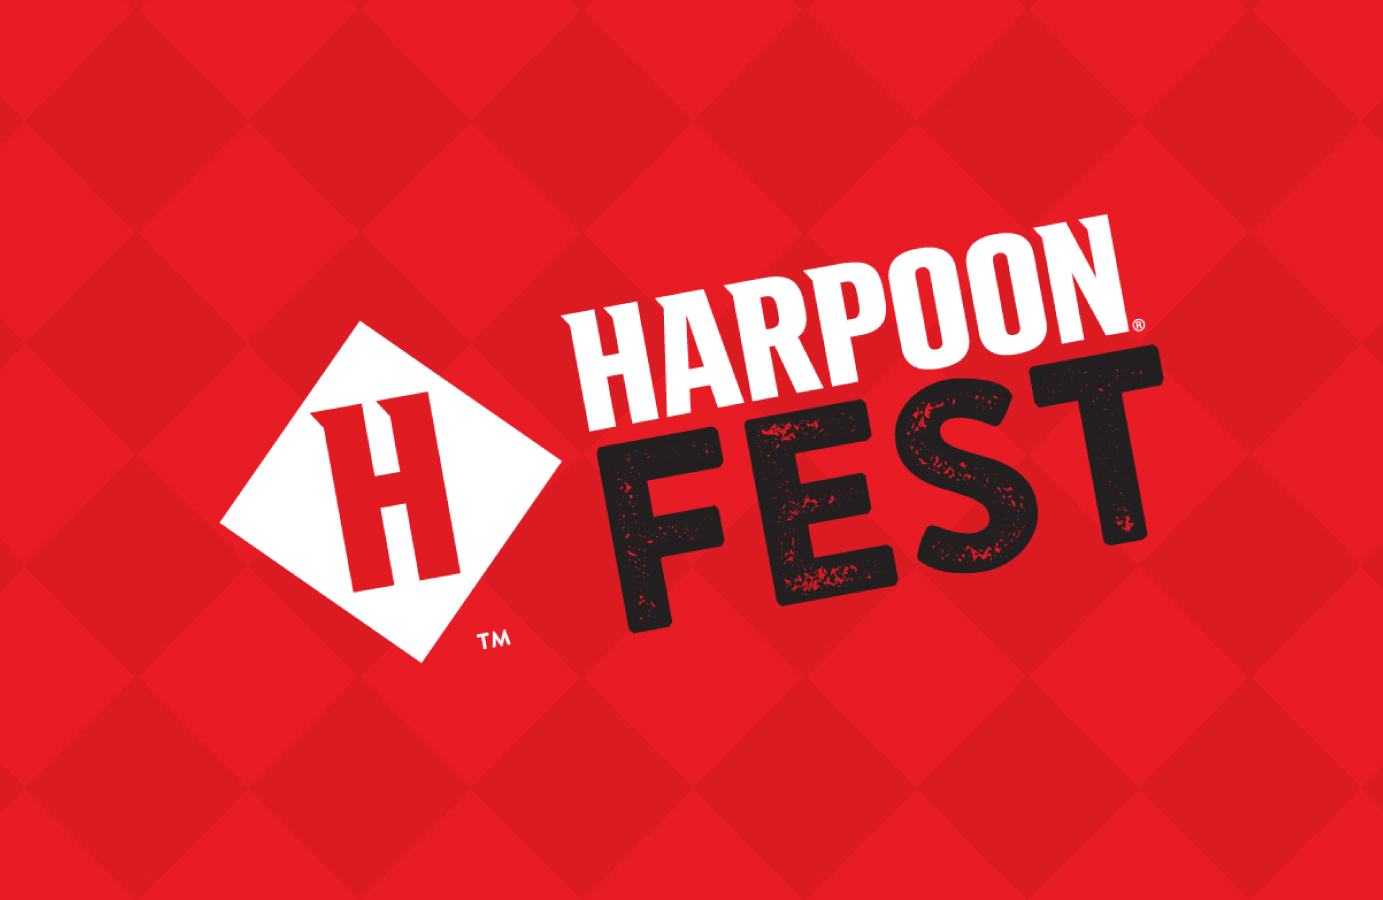 harpoon fest date